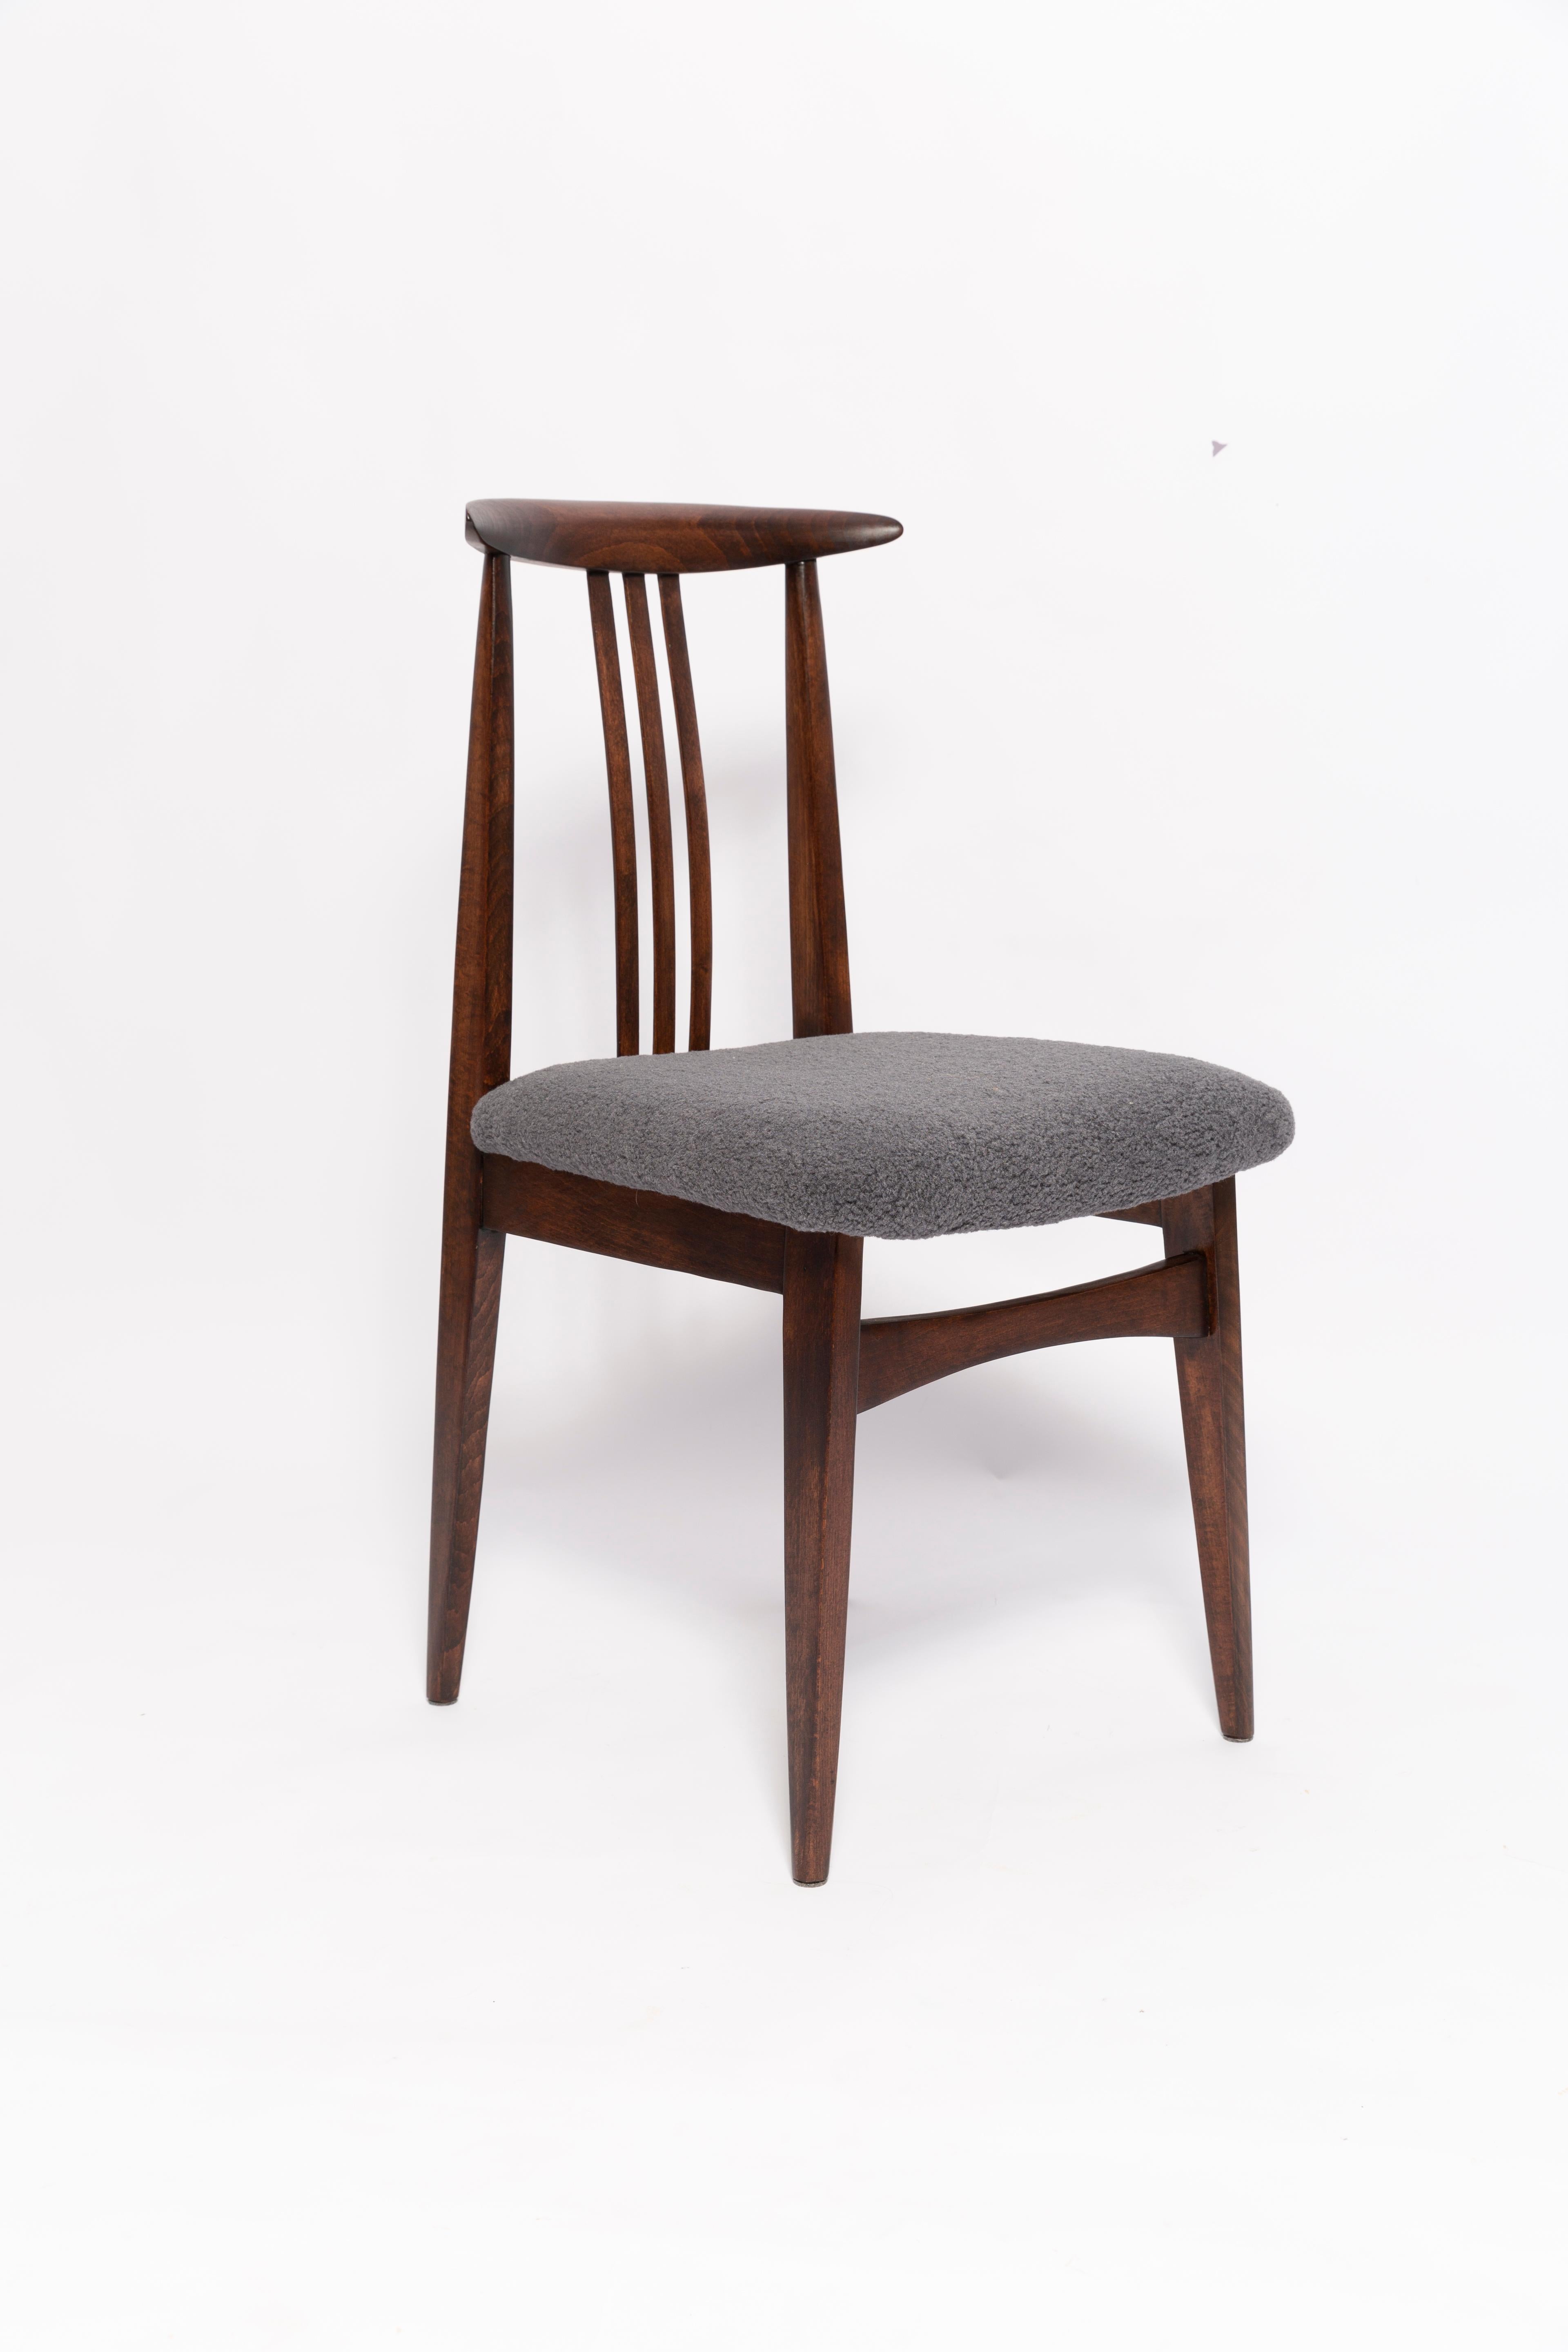 Une belle chaise en hêtre conçue par M. Zielinski, type 200 / 100B. Fabriqué par le Centre de l'industrie du meuble d'Opole à la fin des années 1960 en Pologne. La chaise a subi une rénovation complète de la menuiserie et de la tapisserie. Sièges